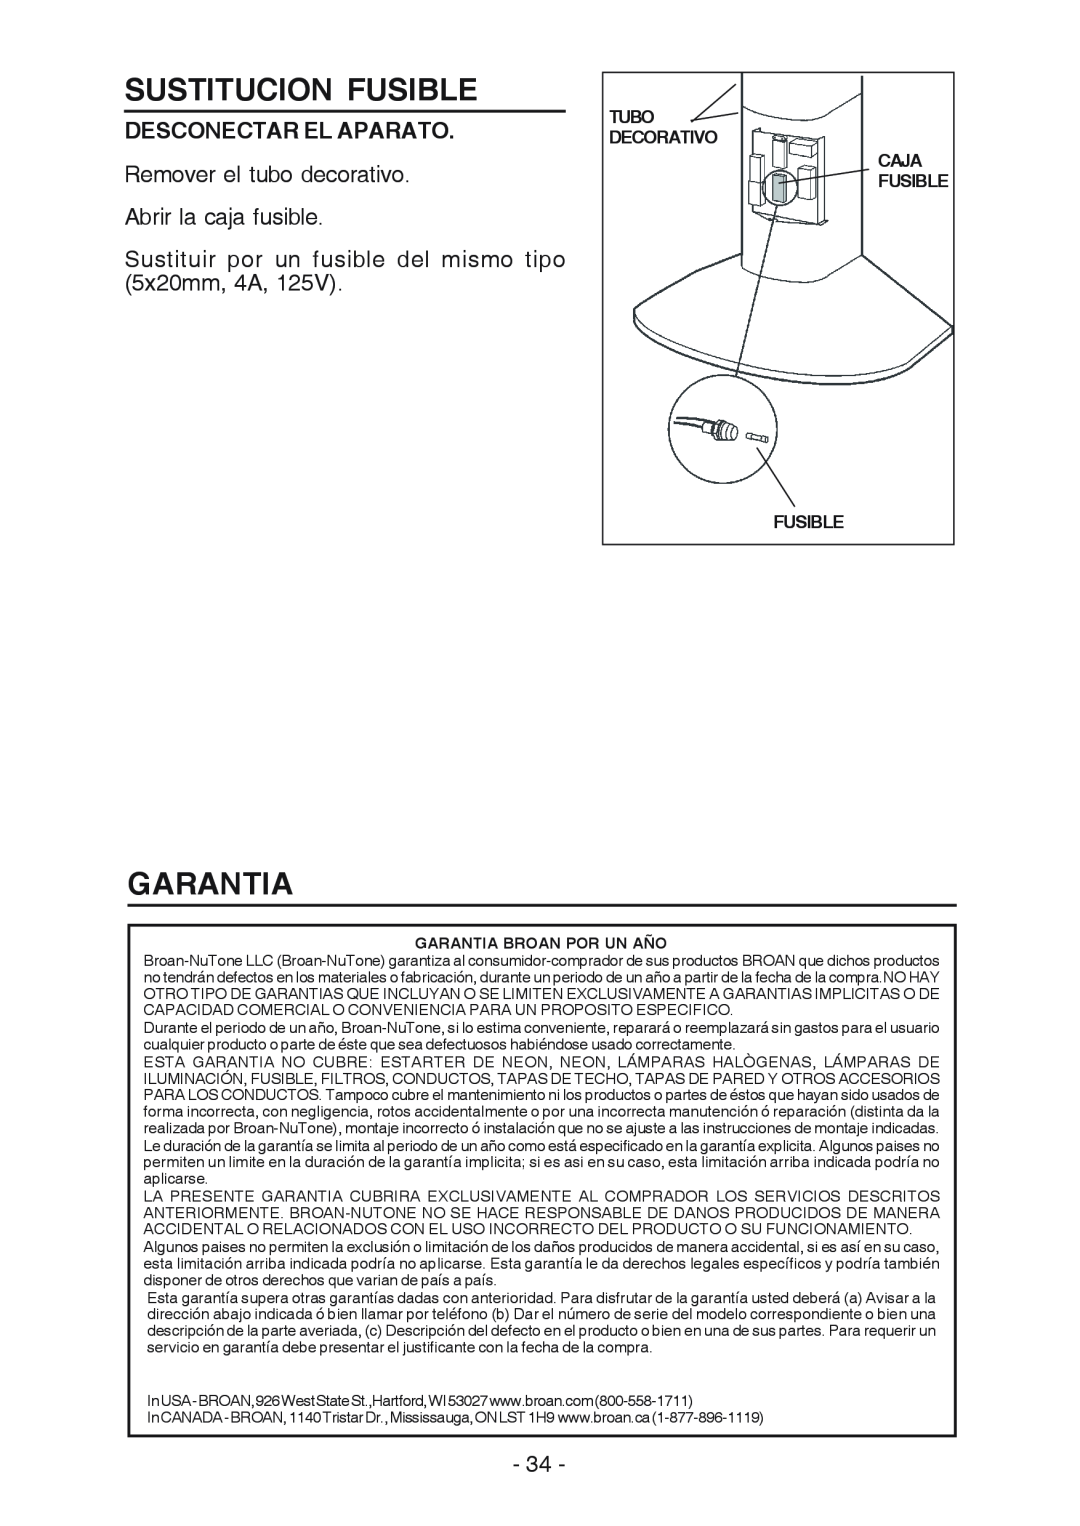 Broan RM523004, RM524204 manual Sustitucion Fusible, Garantia, Desconectar El Aparato 